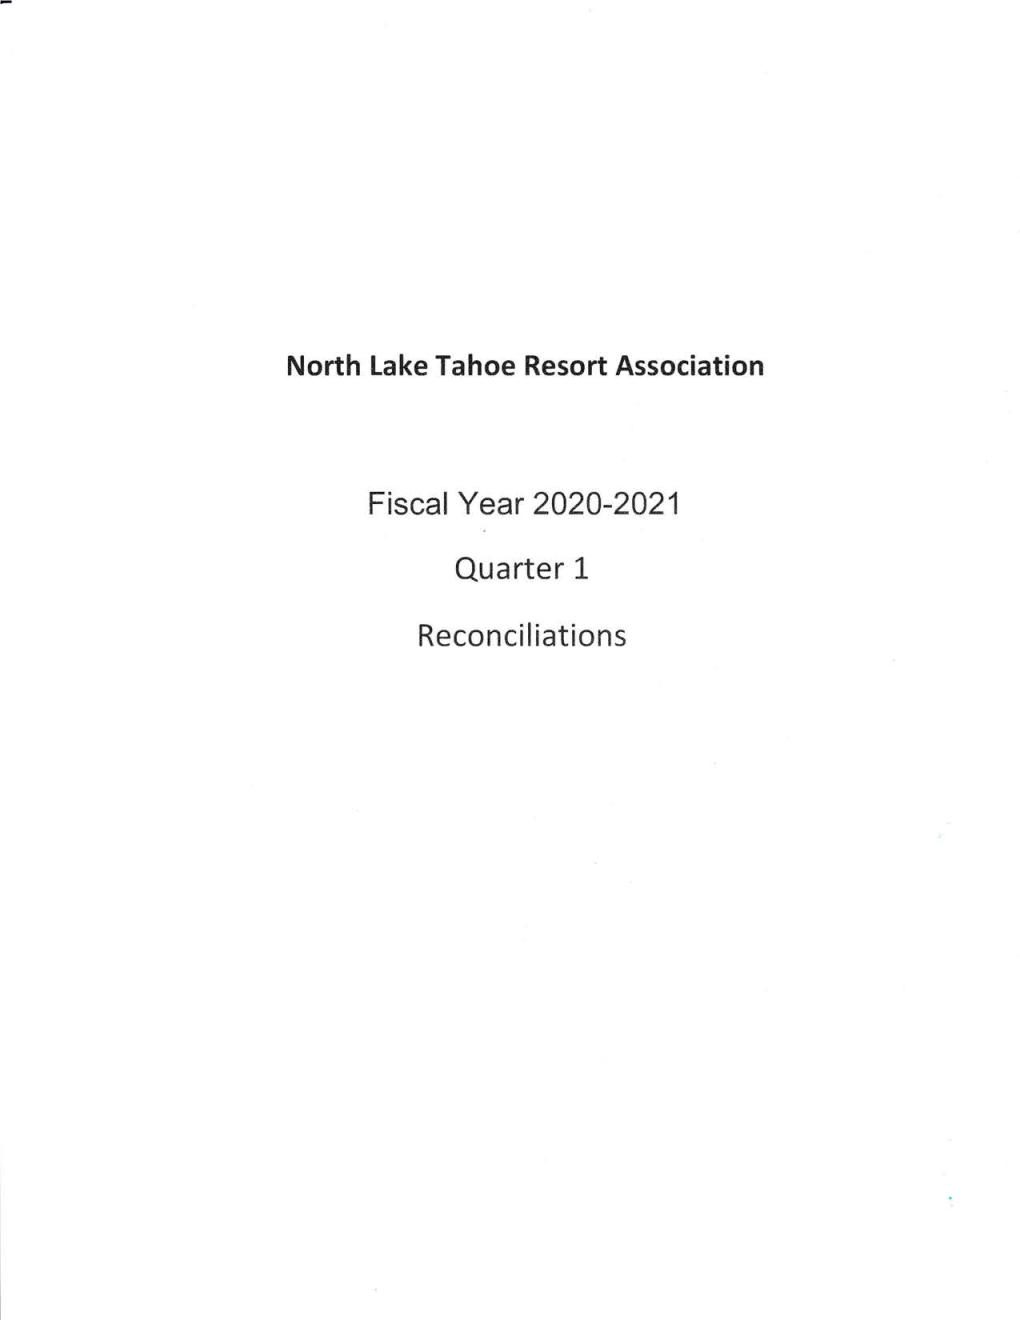 NLTRA FY20.21 Q1 Balance Sheet Reconciliations